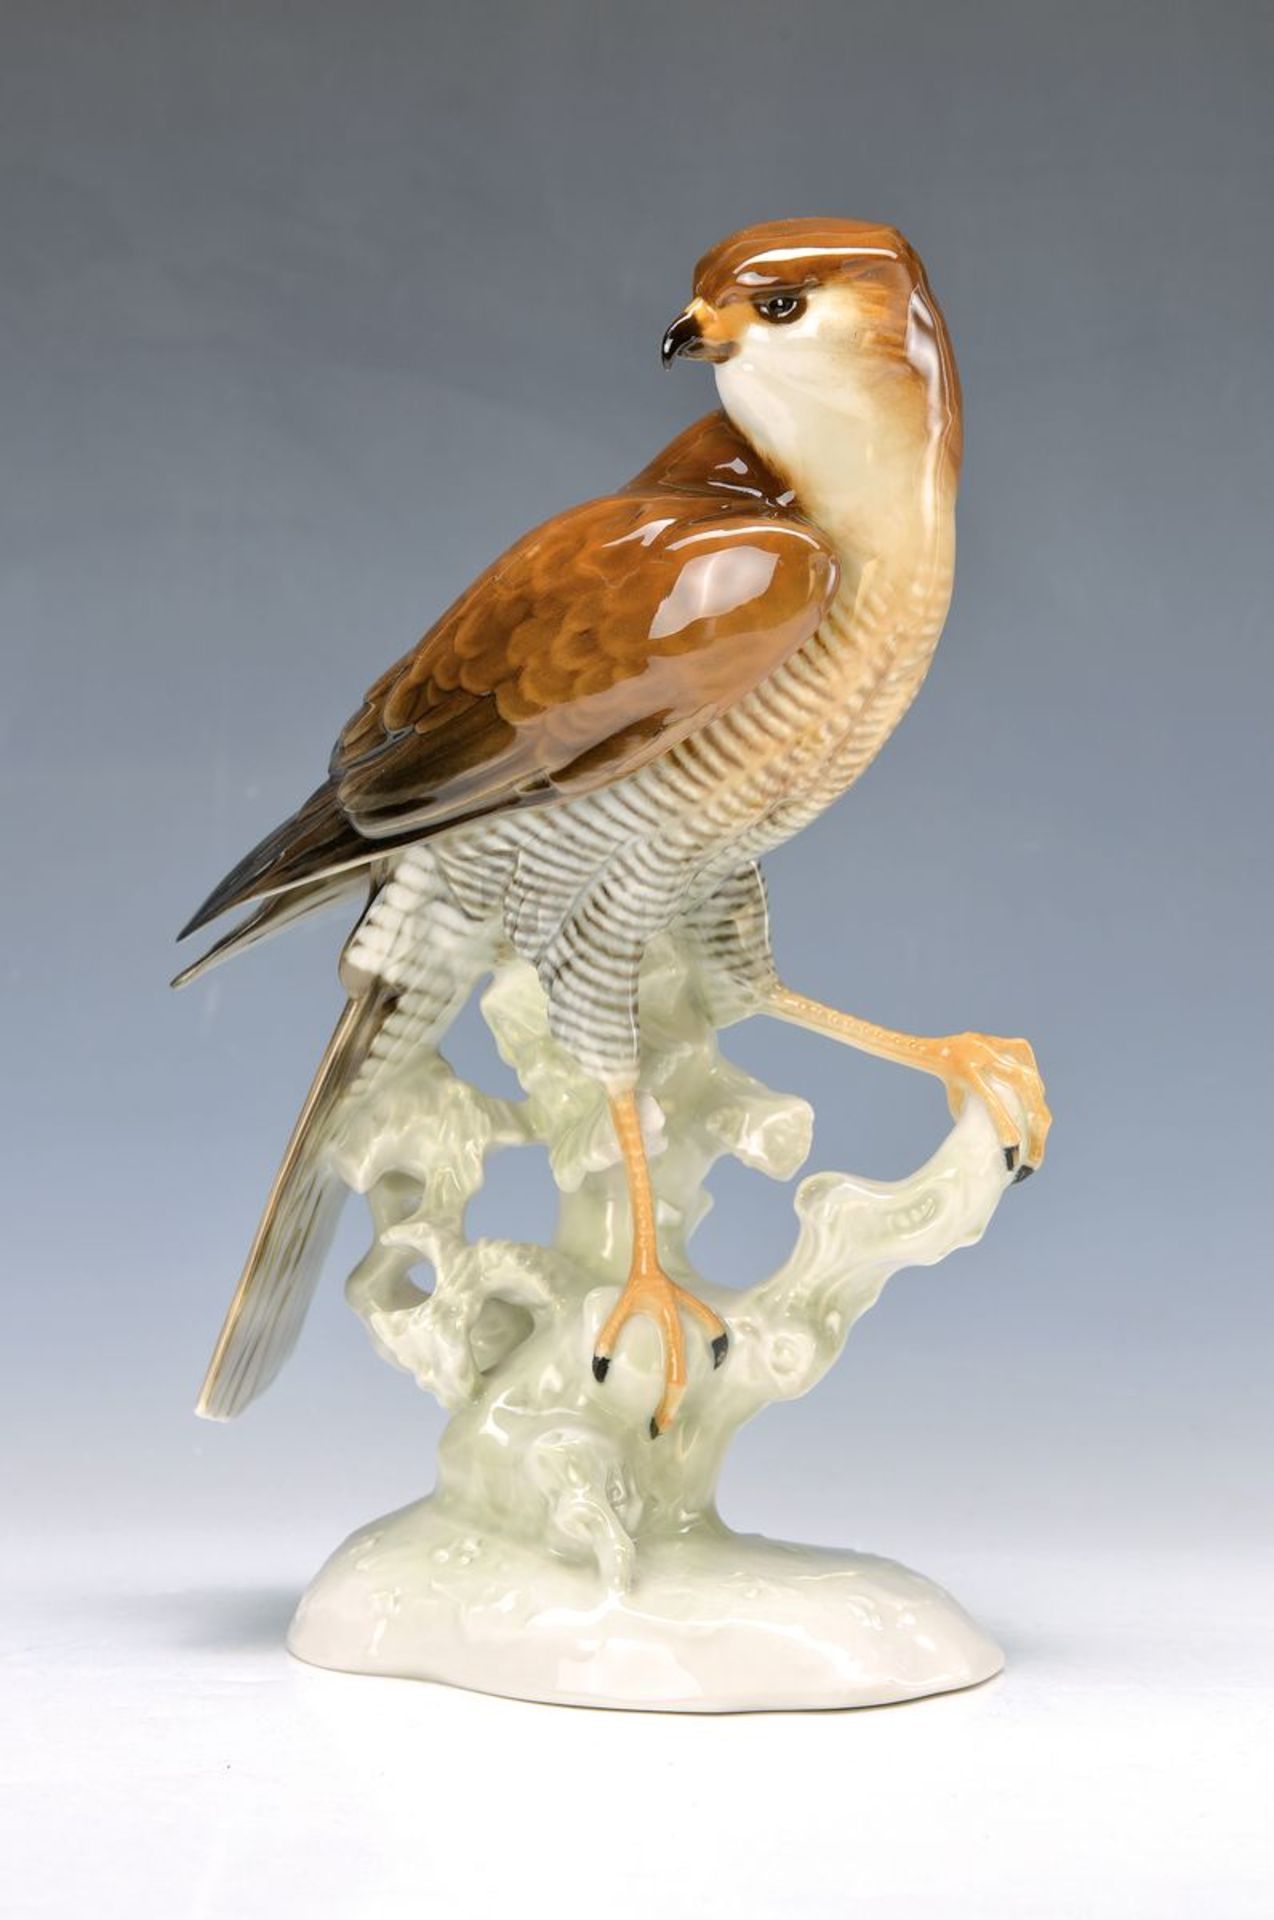 figurine, Hutschenreuther, designed by Achtziger, 1950/60s, sitting hawk, under glazepainting, on